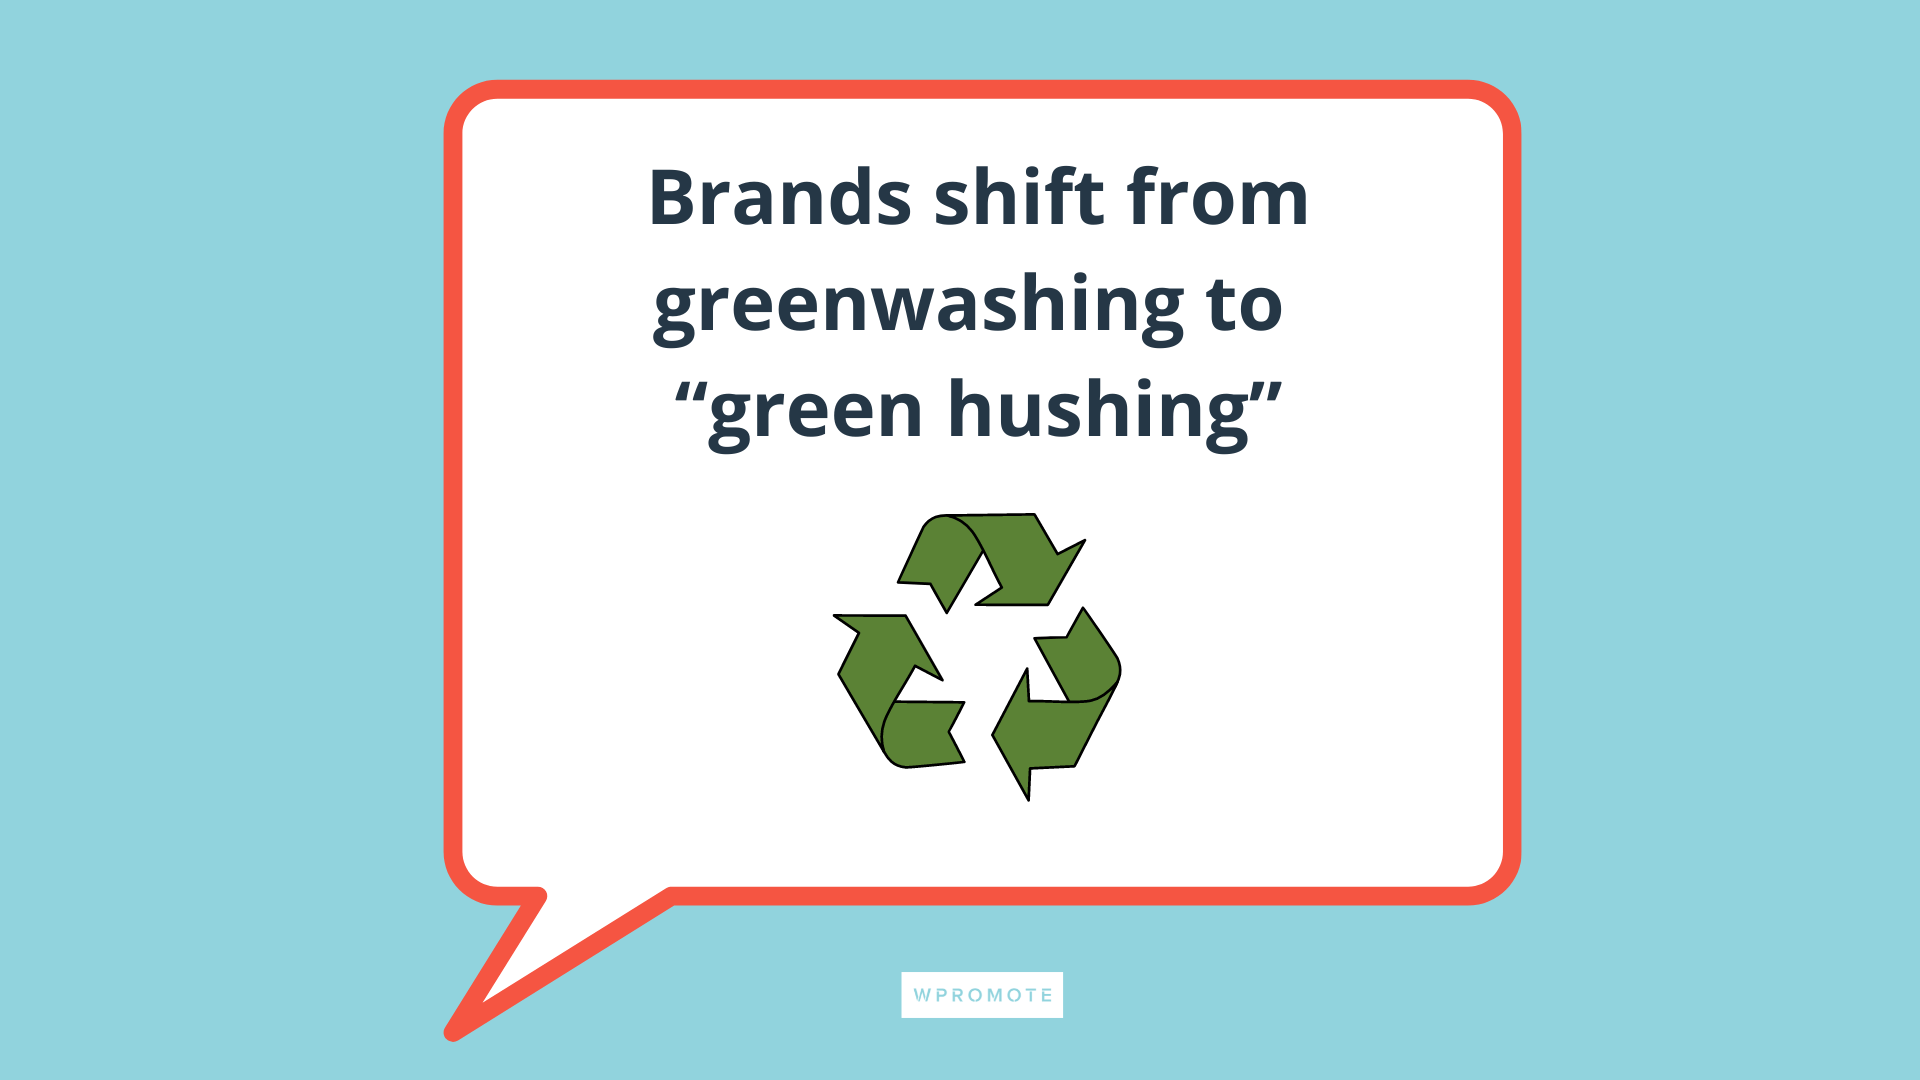 Merek bergeser dari greenwashing ke green hushing